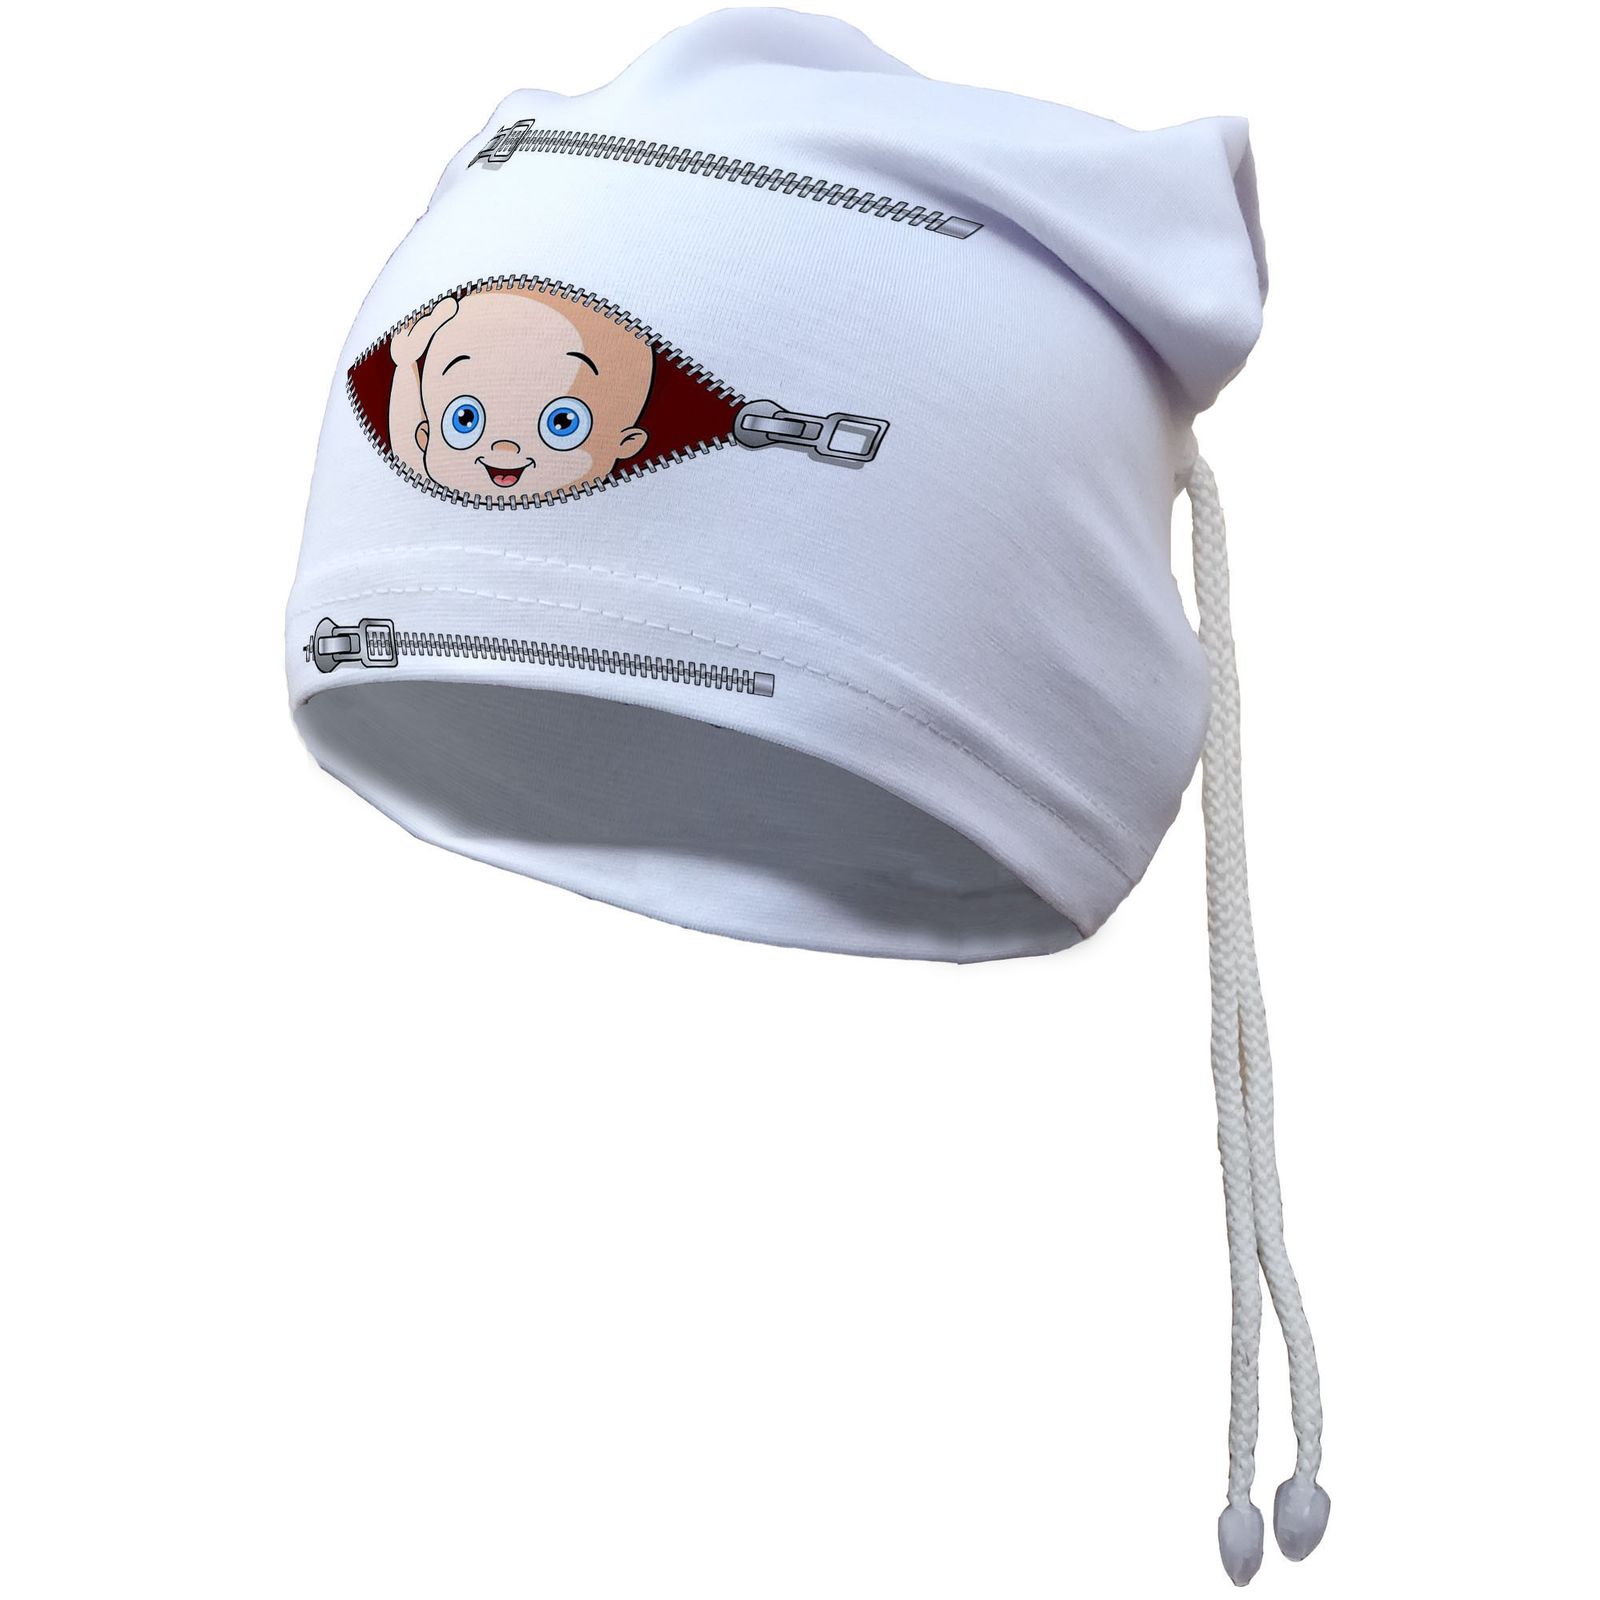 کلاه نوزادی آی تمر مدل نوزاد کد 302 -  - 1